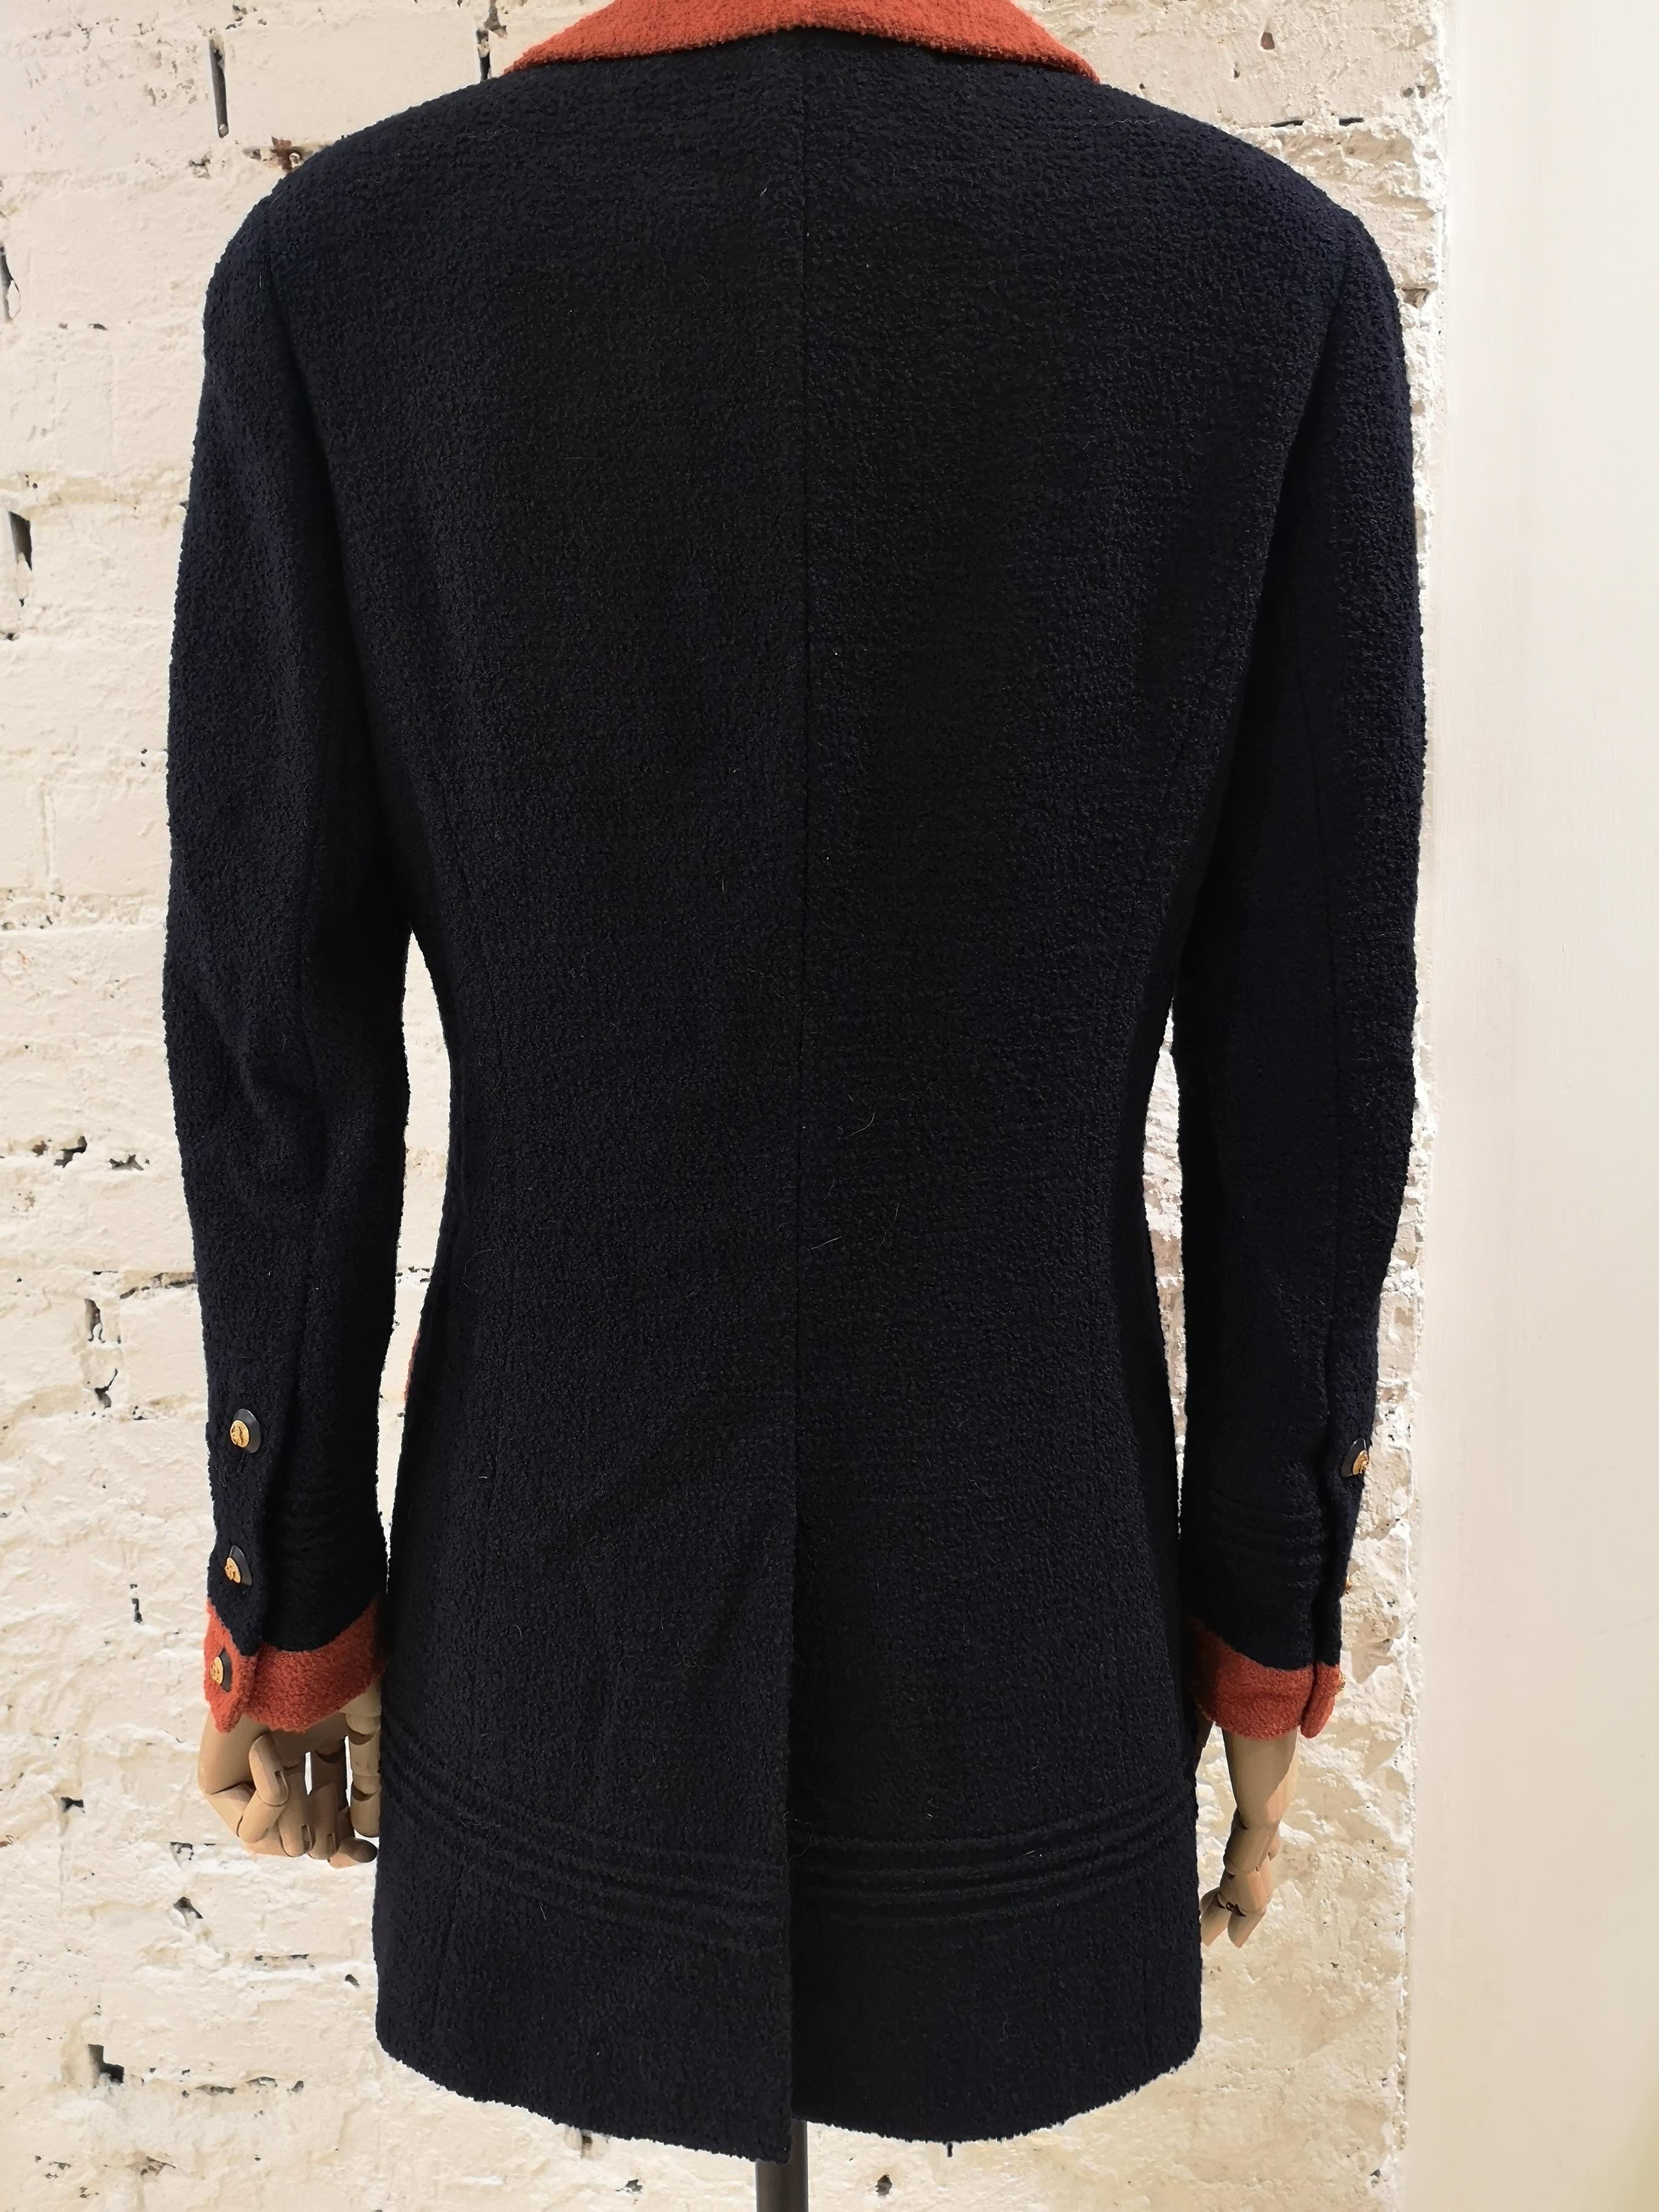 Women's Chanel blue orange wool blazer / jacket